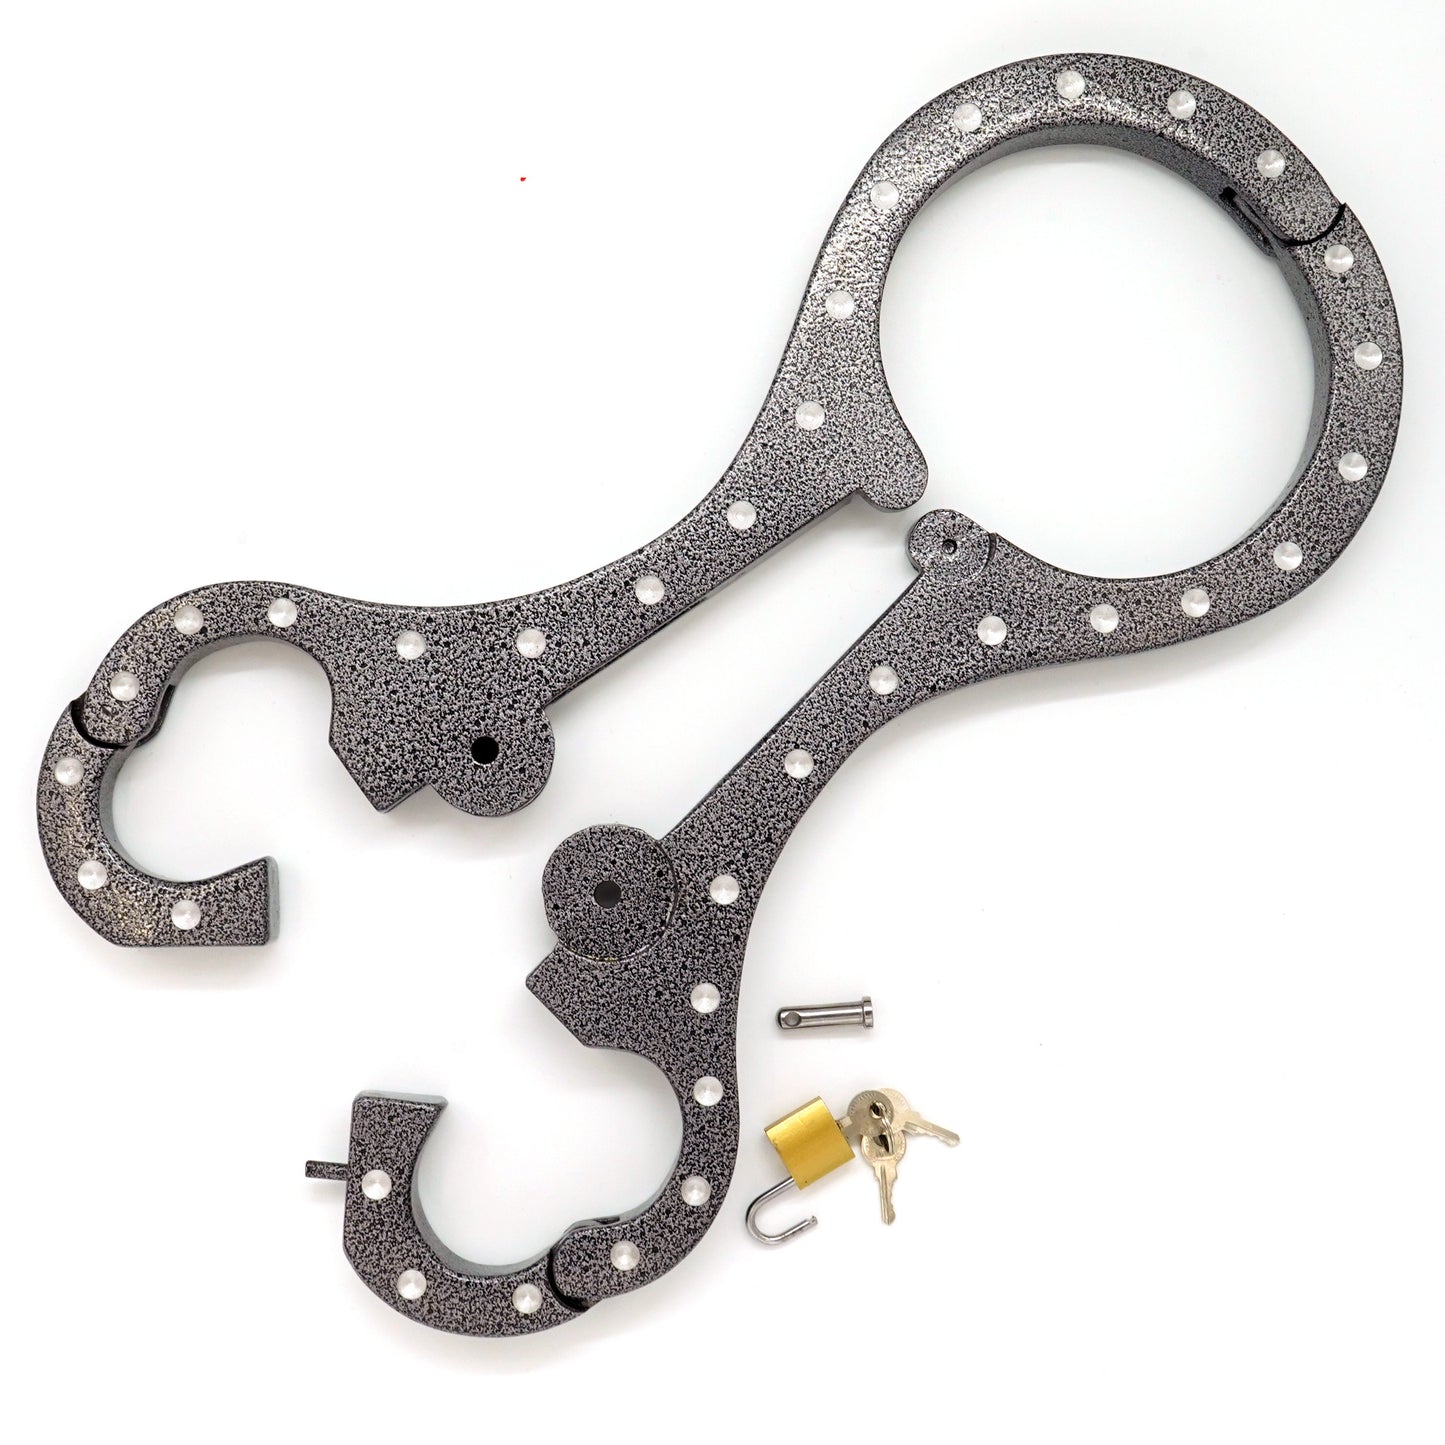 Aluminum bondage shrew's fiddle yoke for neck and hands